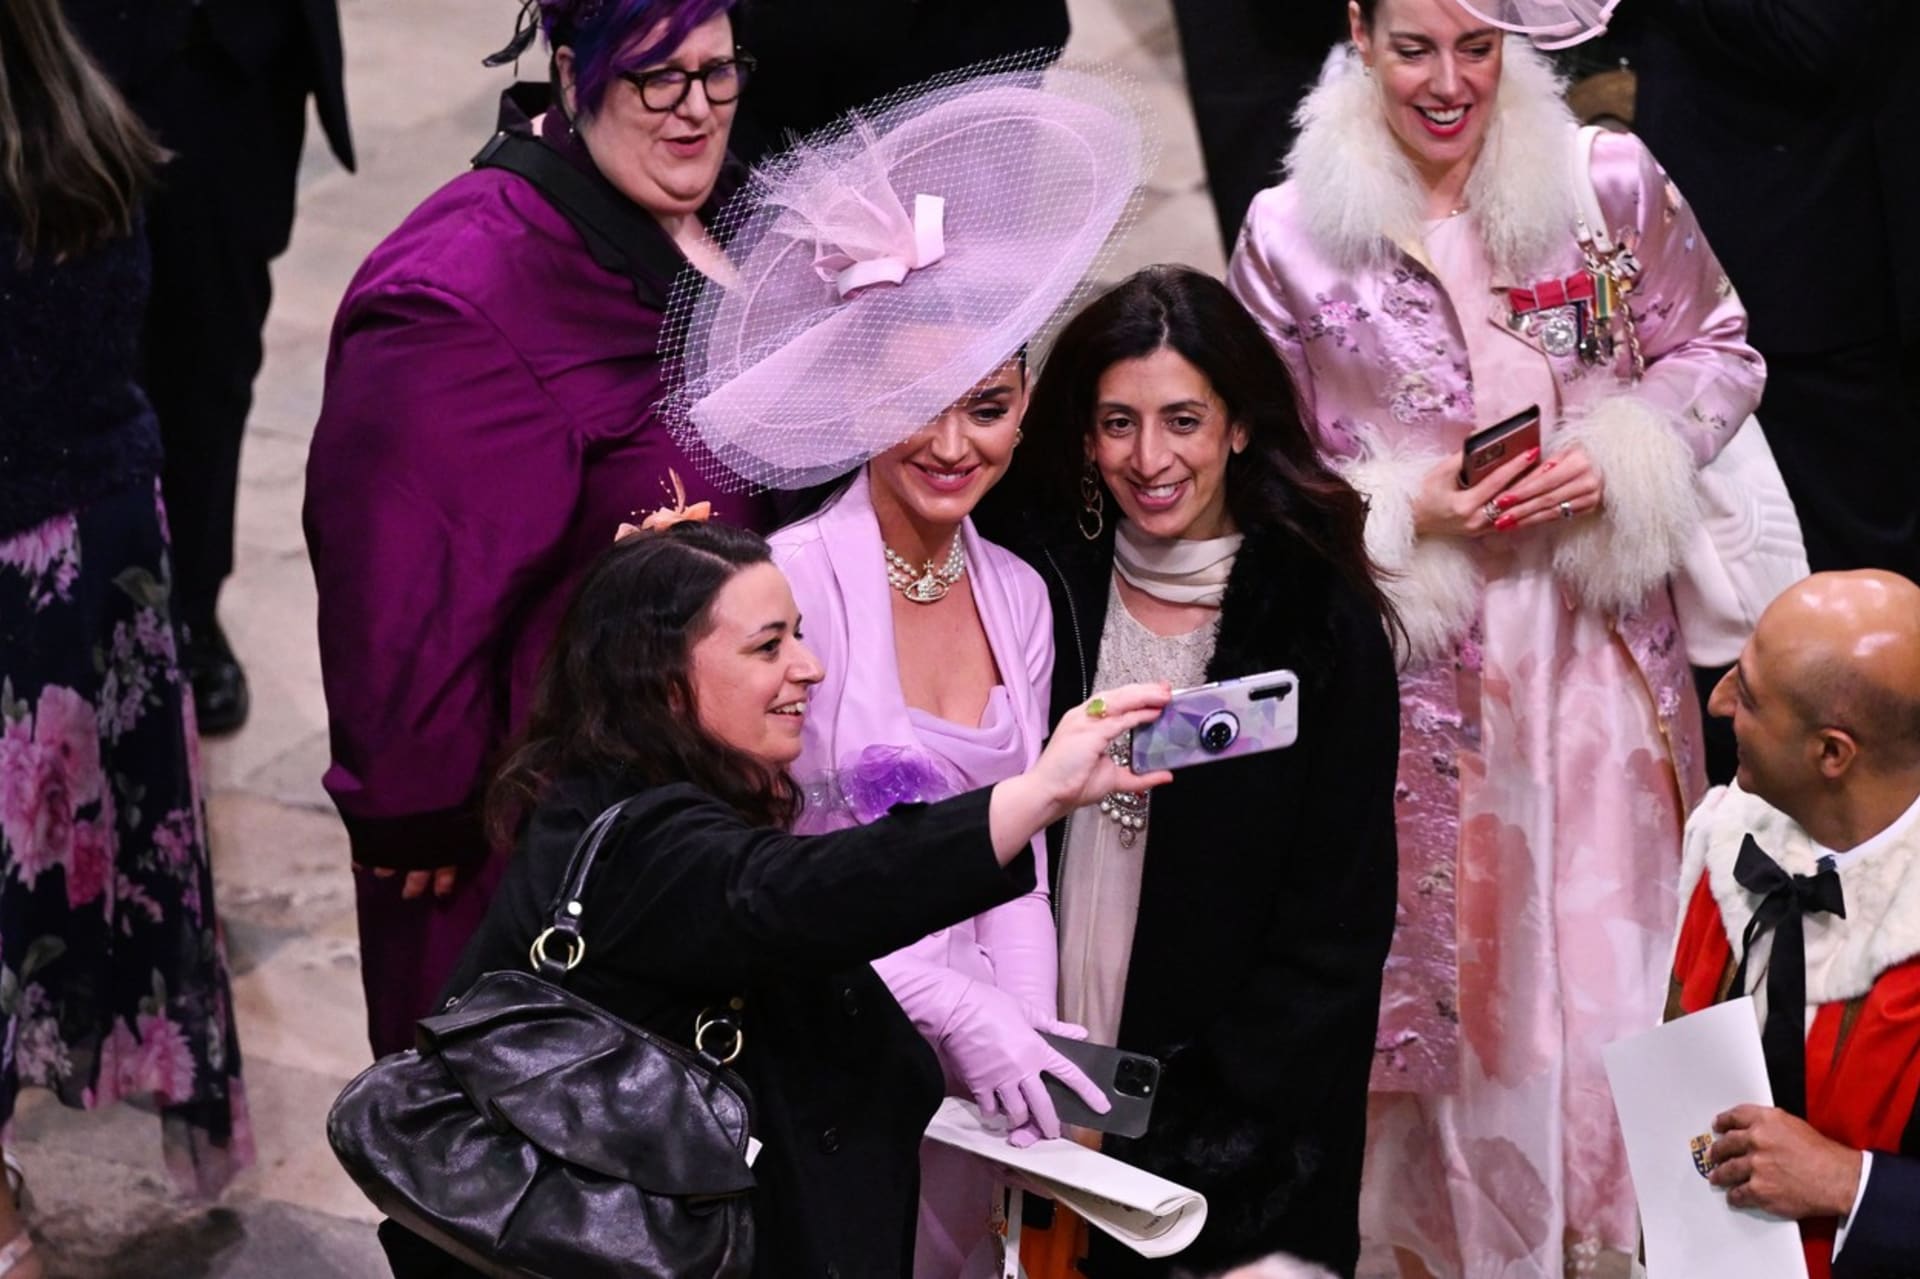 I v záplavě vzácných hostů z celého světa Katy Perry našla fanoušky, kteří si s ní chtěli udělat selfie.